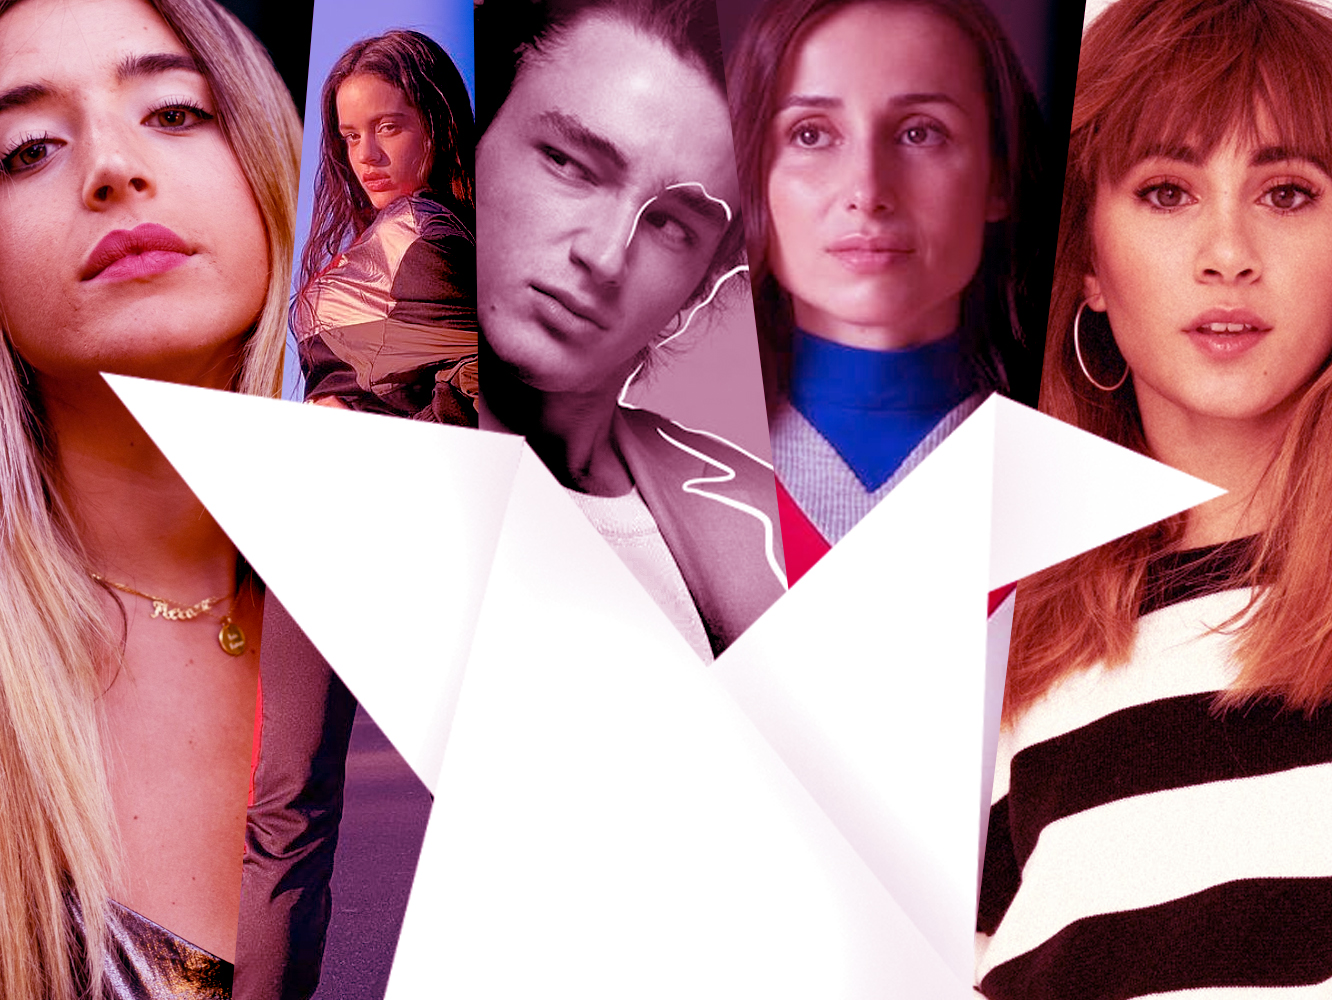  Premios Yudeo ’19  | Nacional / Latina | Mejor Grabación en Solitario